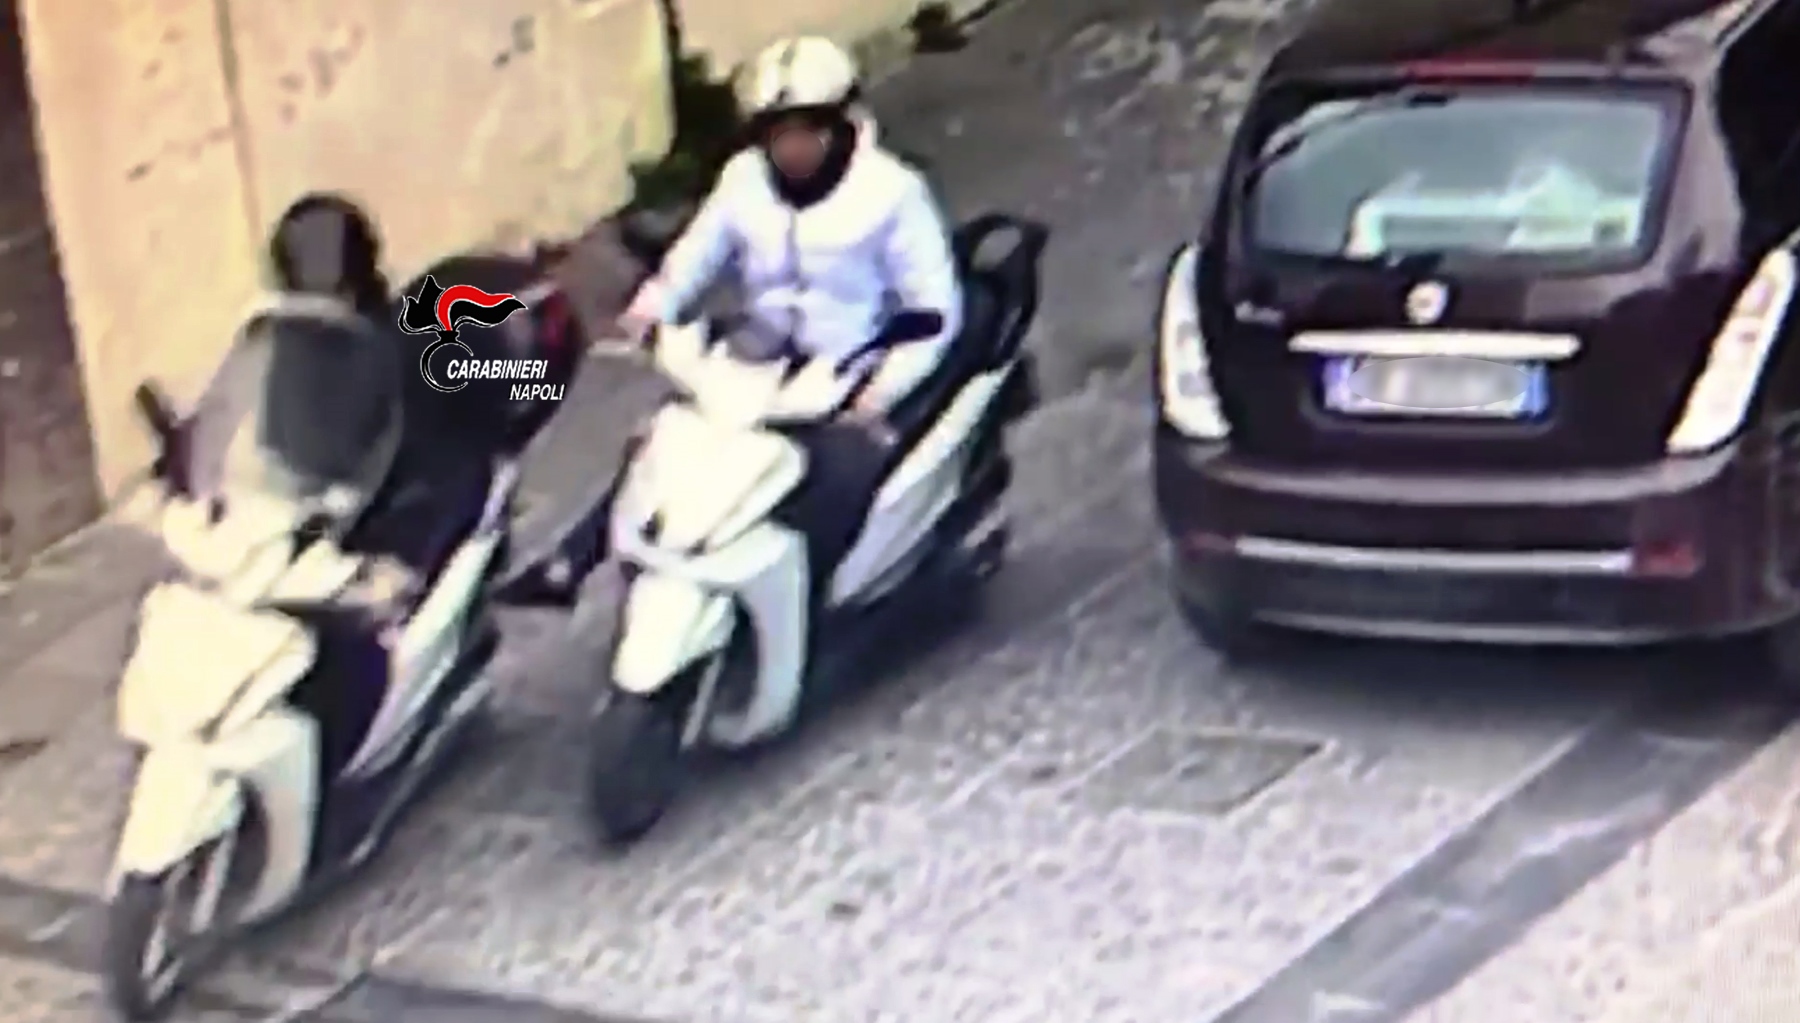  Gragnano, 27enne vicino al clan preso dai carabinieri perché ruba uno scooter e si fa spingere